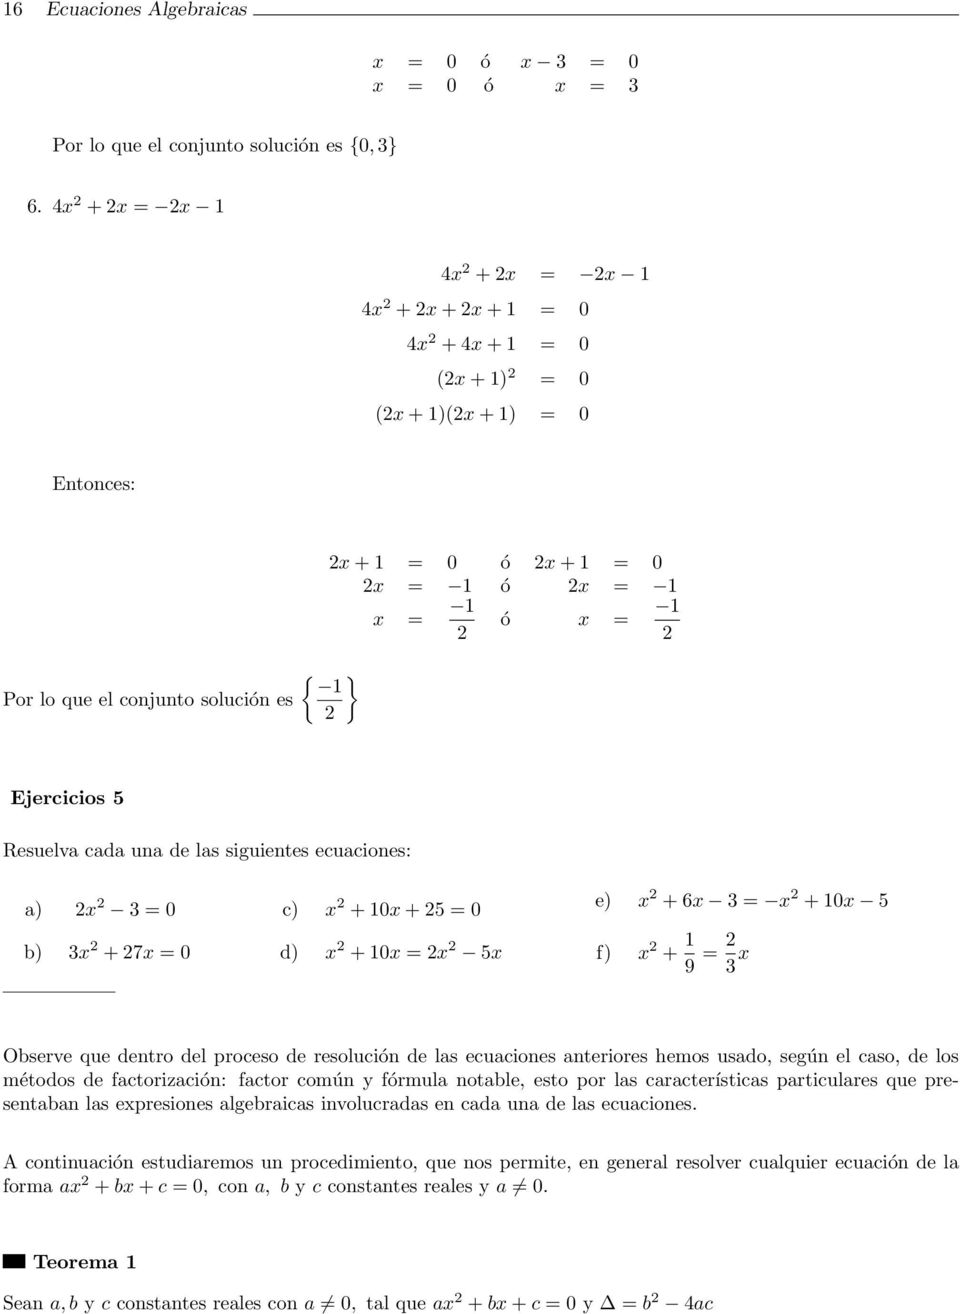 Ejercicios 5 Resuelva cada una de las siguientes ecuaciones: a) x = 0 b) x + 7x = 0 c) x + 10x + 5 = 0 d) x + 10x = x 5x e) x + 6x = x + 10x 5 f) x + 1 9 = x Observe que dentro del proceso de